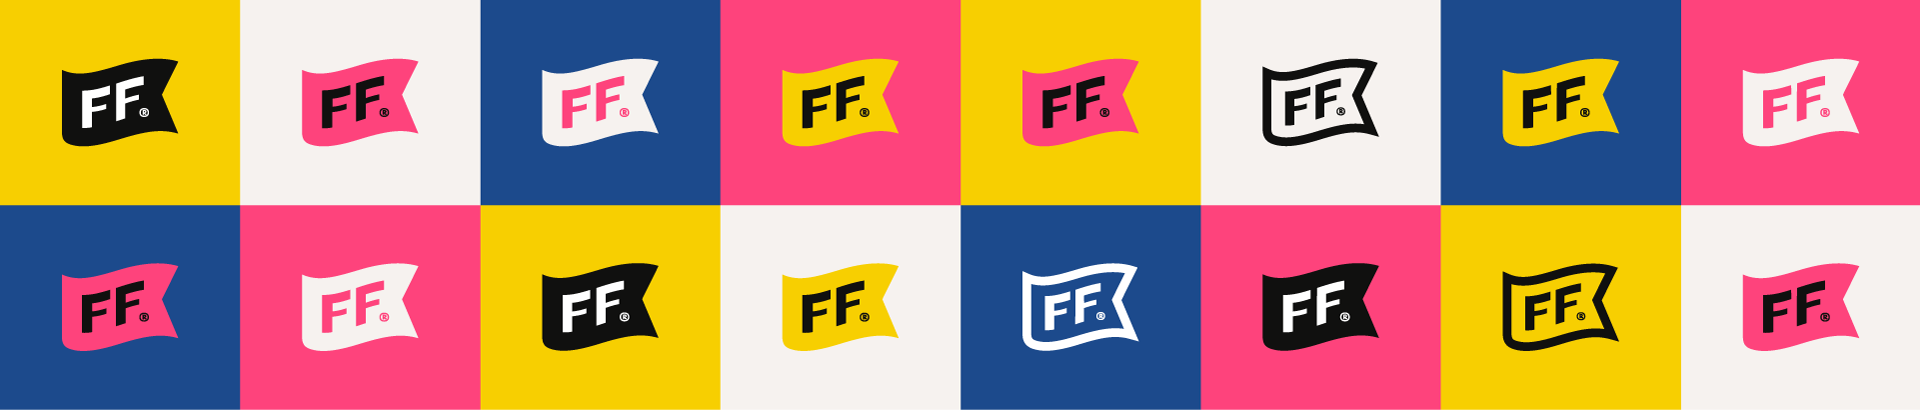 Grid of Fanci Freez FF flag logos